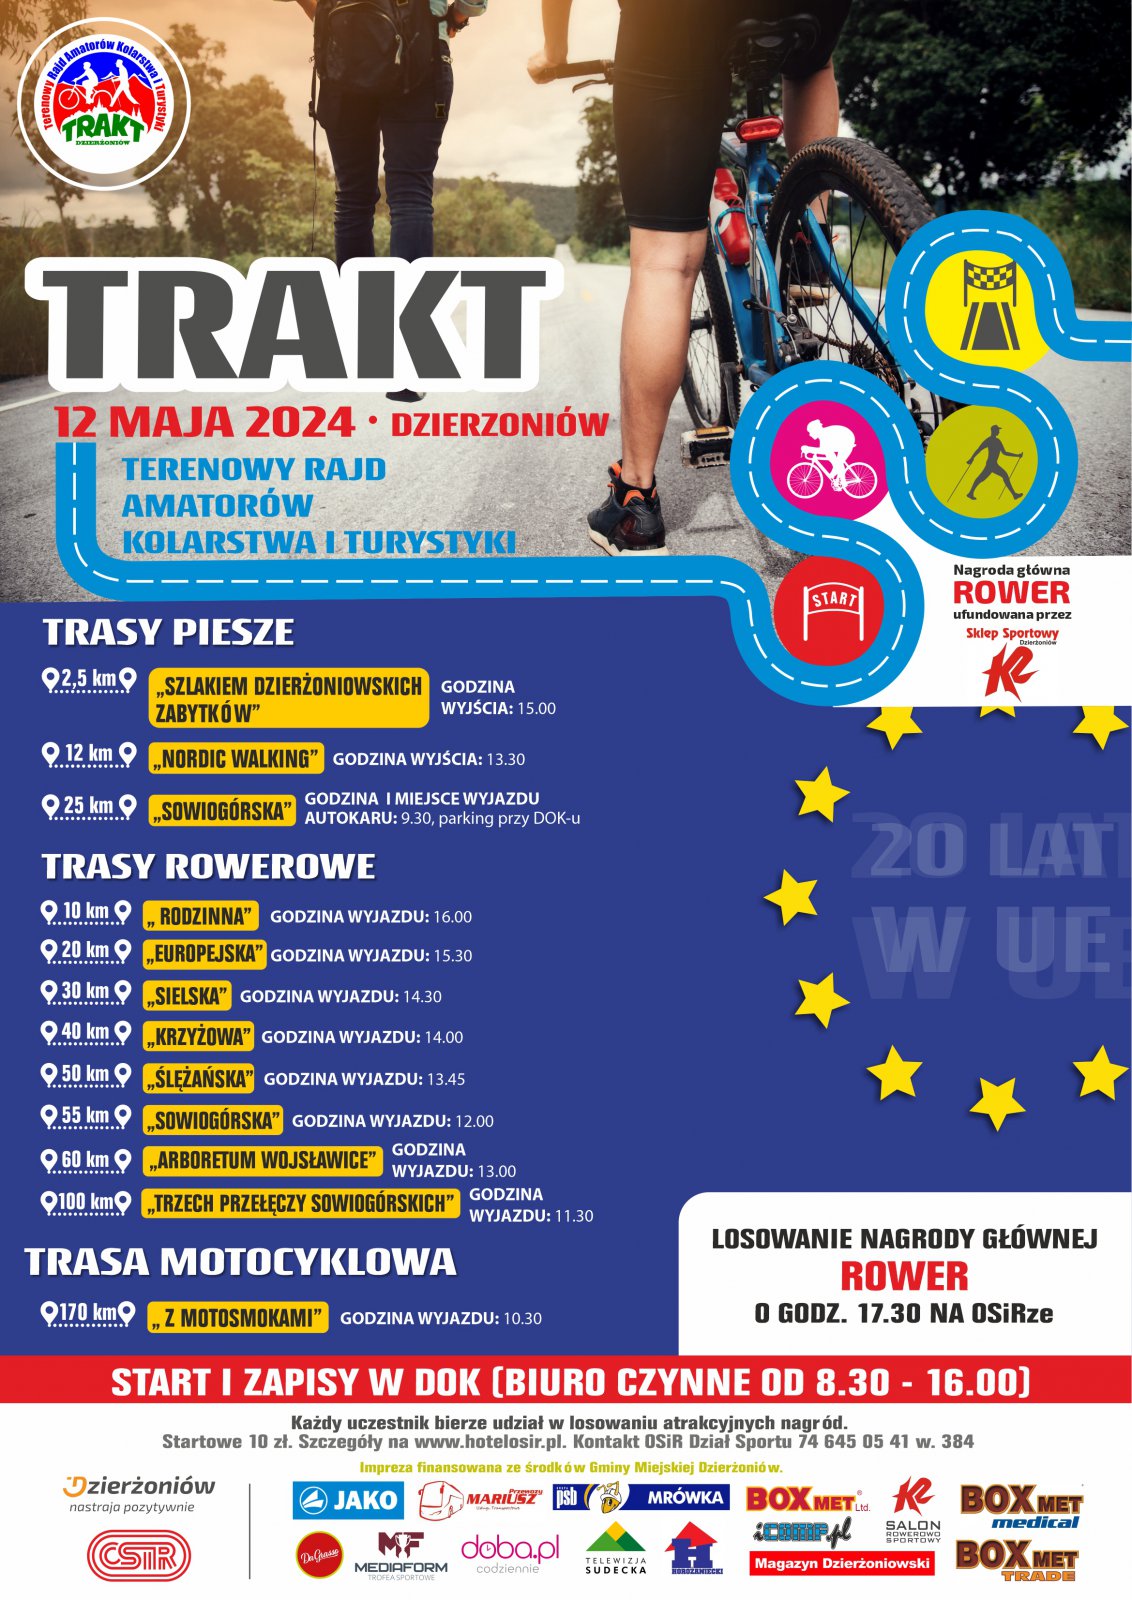 Plakat wydarzenia ze zdjeciem rowerzysty i dużym napisem TRAKT